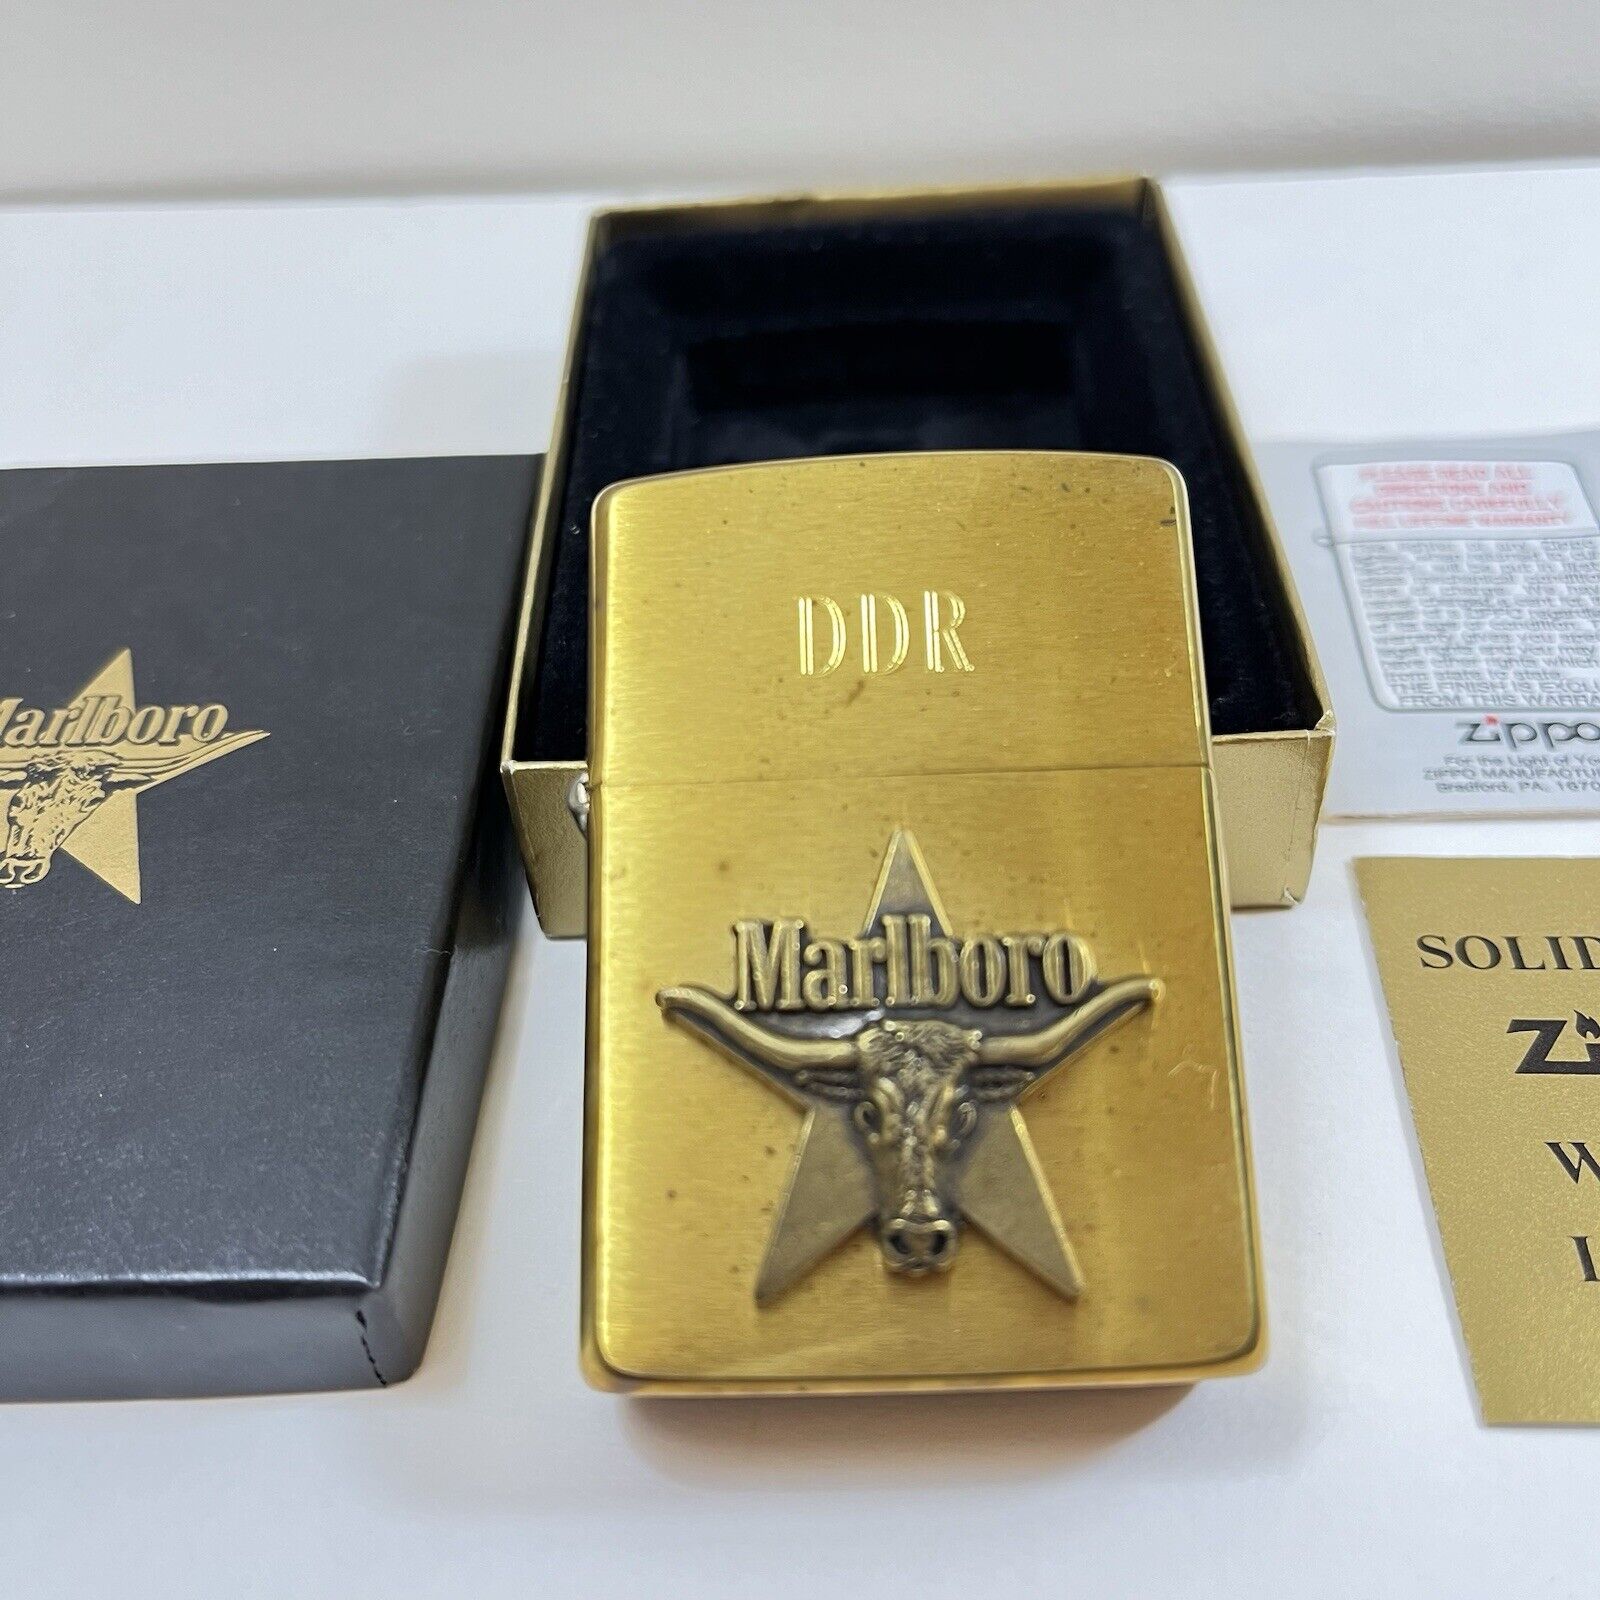 NIB Vintage Zippo 1990s MARLBORO Longhorn Star BRASS LIGHTER Monogrammed DDR New